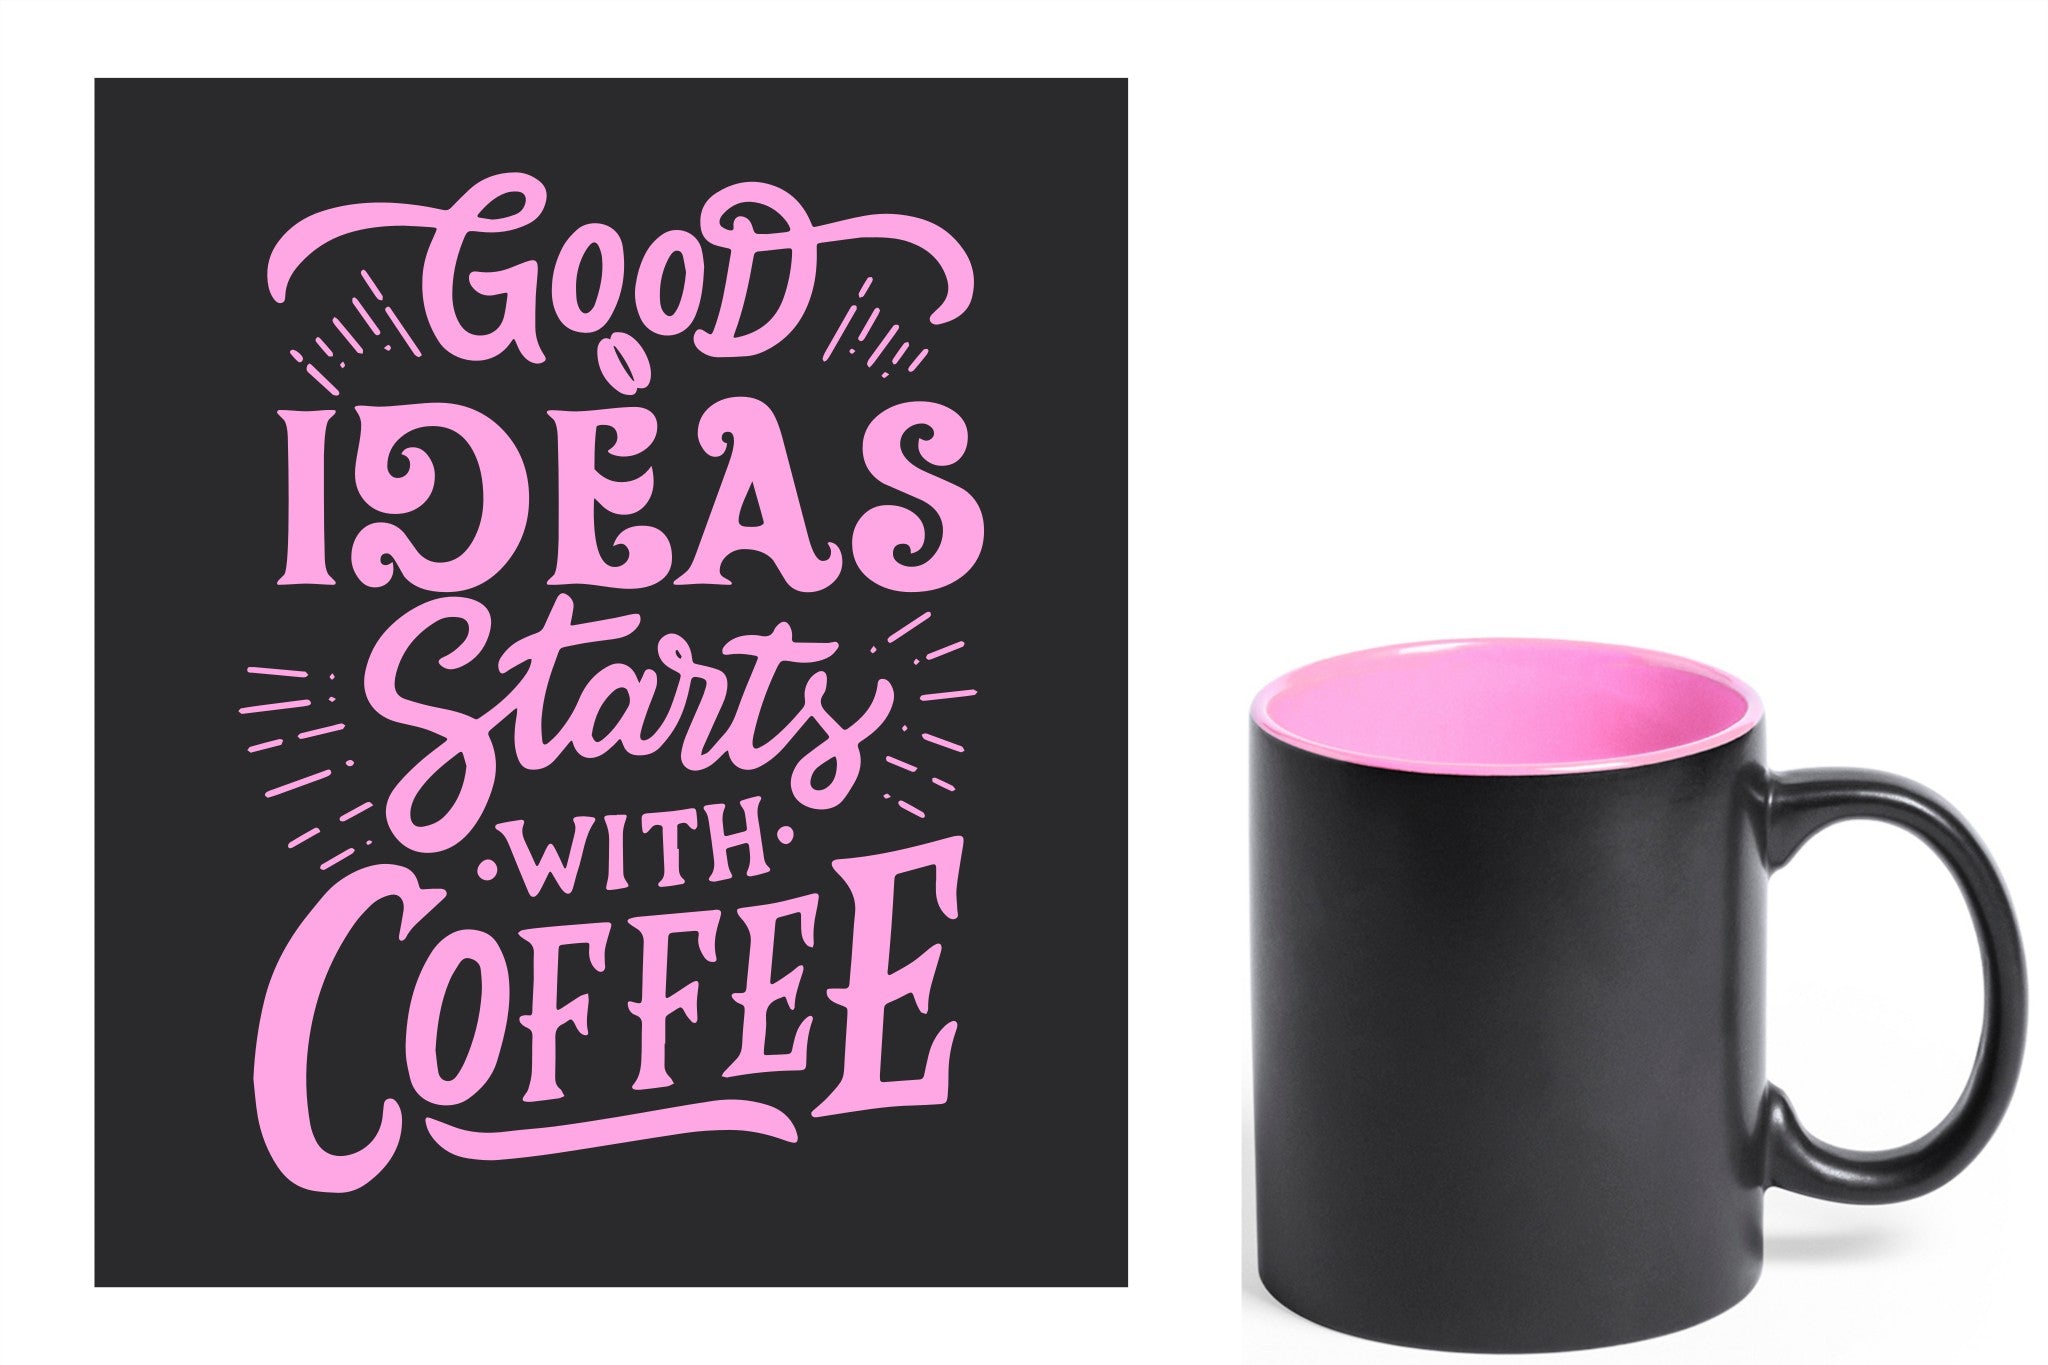 zwarte keramische mok met roze gravure  'Good ideas starts with coffee'.